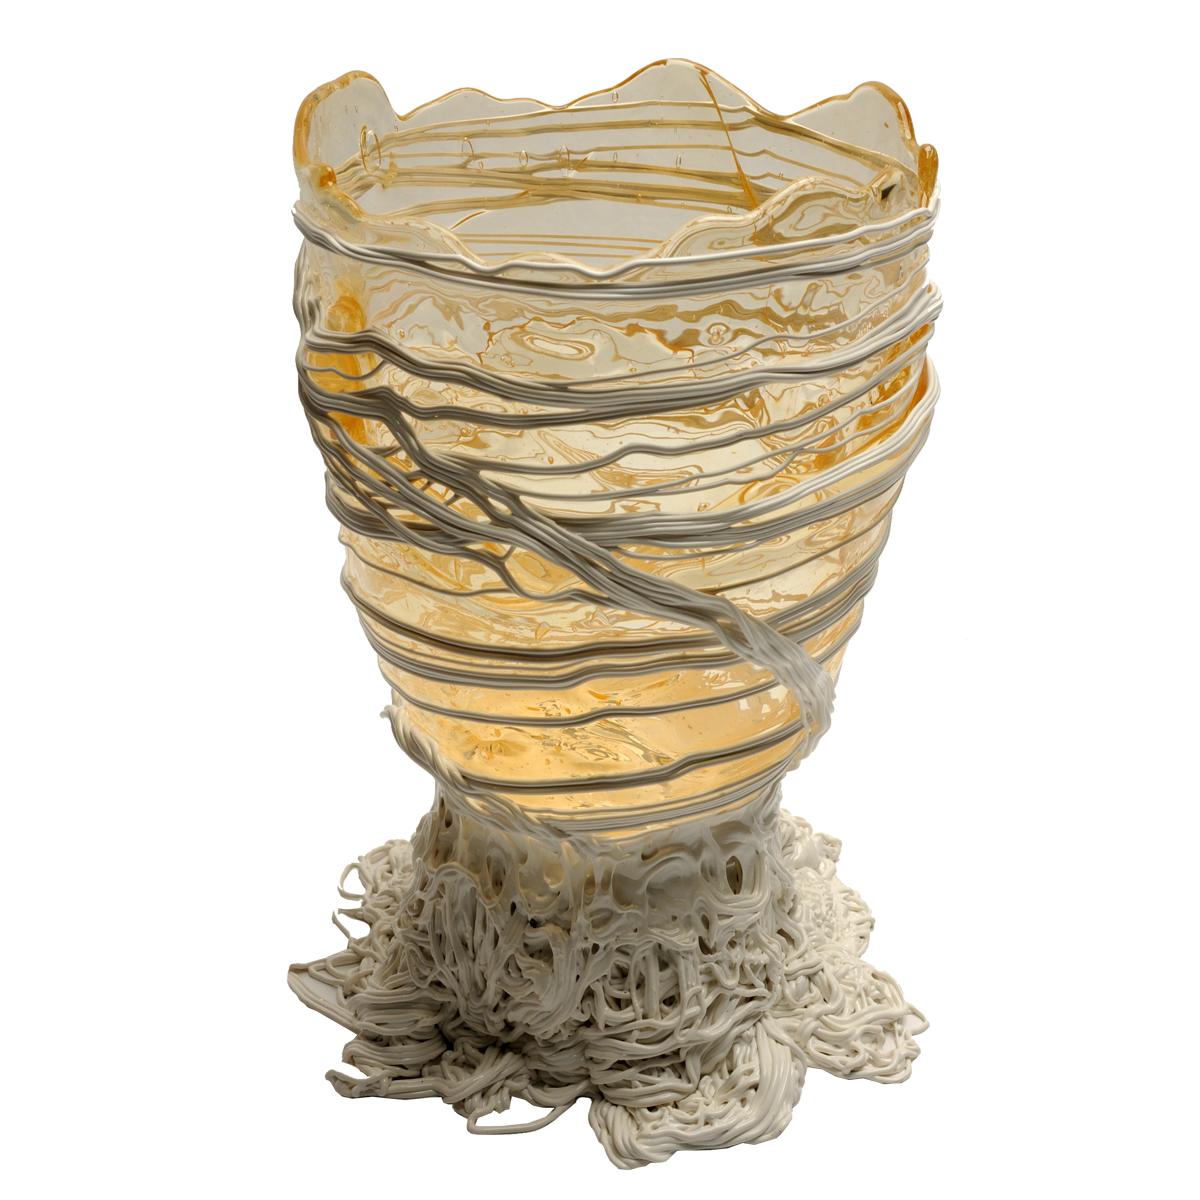 Vase en spaghetti, transparent, blanc.

Vase en résine souple conçu par Gaetano Pesce en 1995 pour la collection Fish Design.

Mesures : L ø 22cm x H 36cm

Autres tailles disponibles.

Couleurs : transparent, blanc.
Vase en résine souple